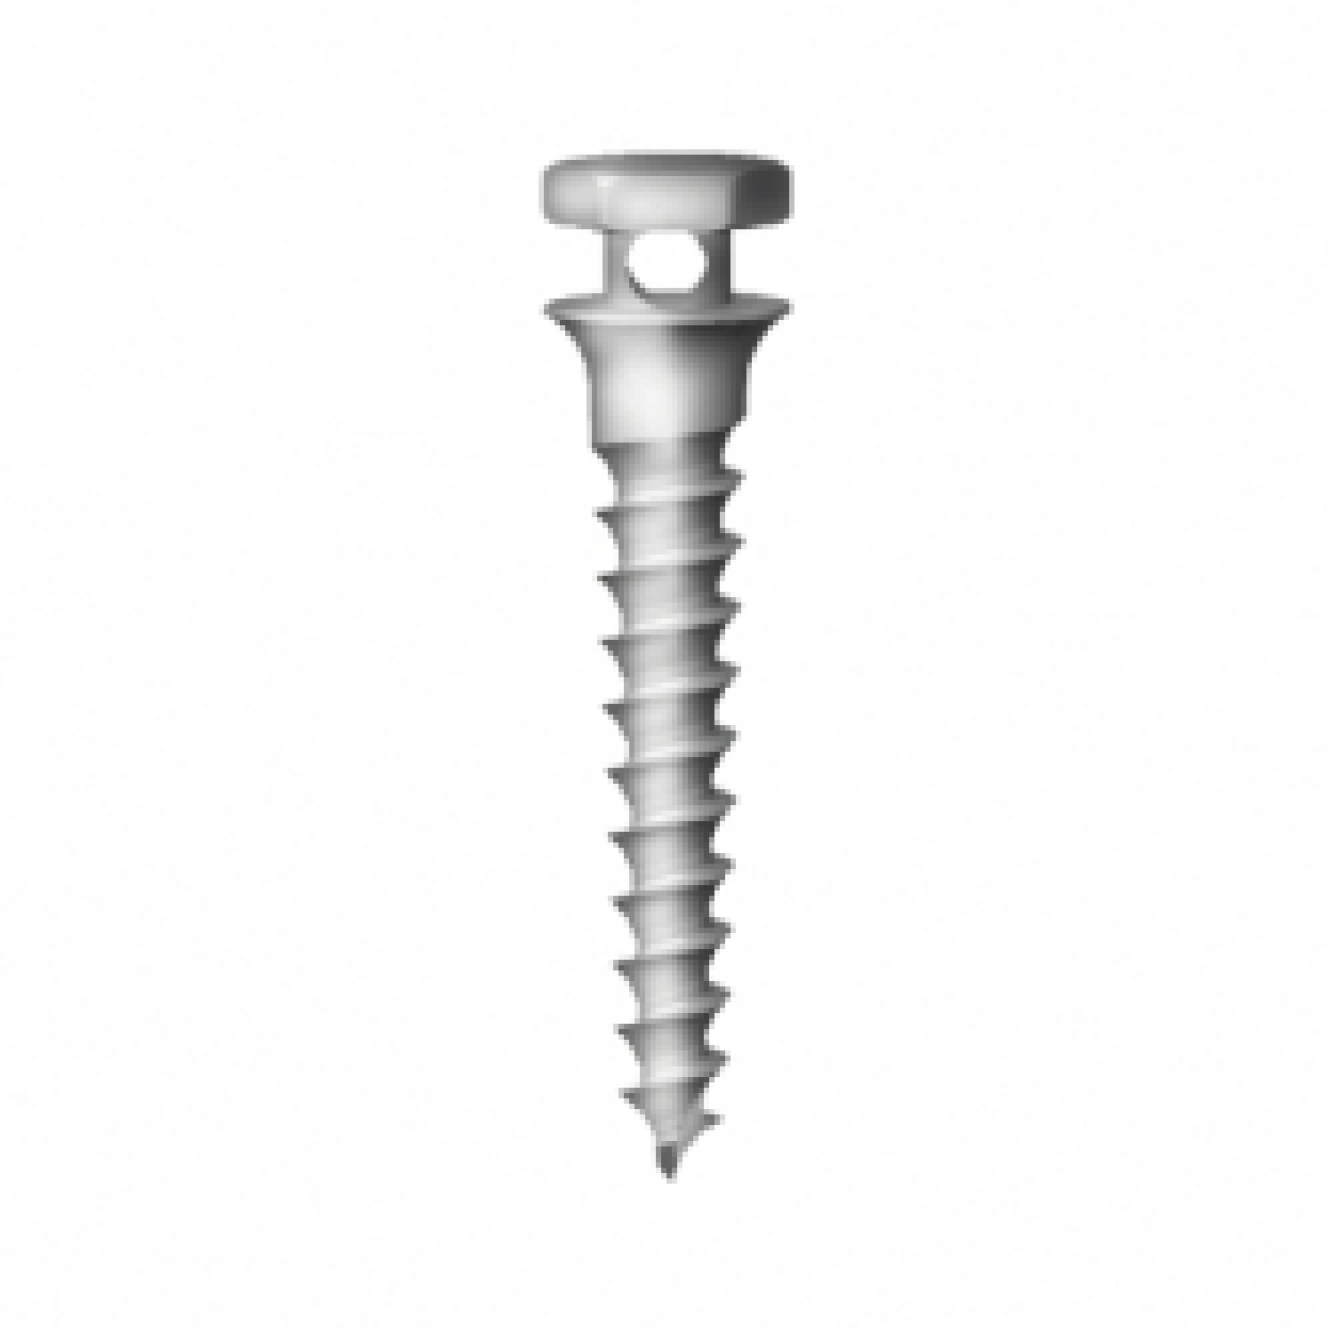 OS-S-20-006 Стоматологический ортодонтический винт для эластичной тяги и проволоки, диаметр 1.8 мм, длина 6 мм, Mr.Curette Tech, Южная Корея